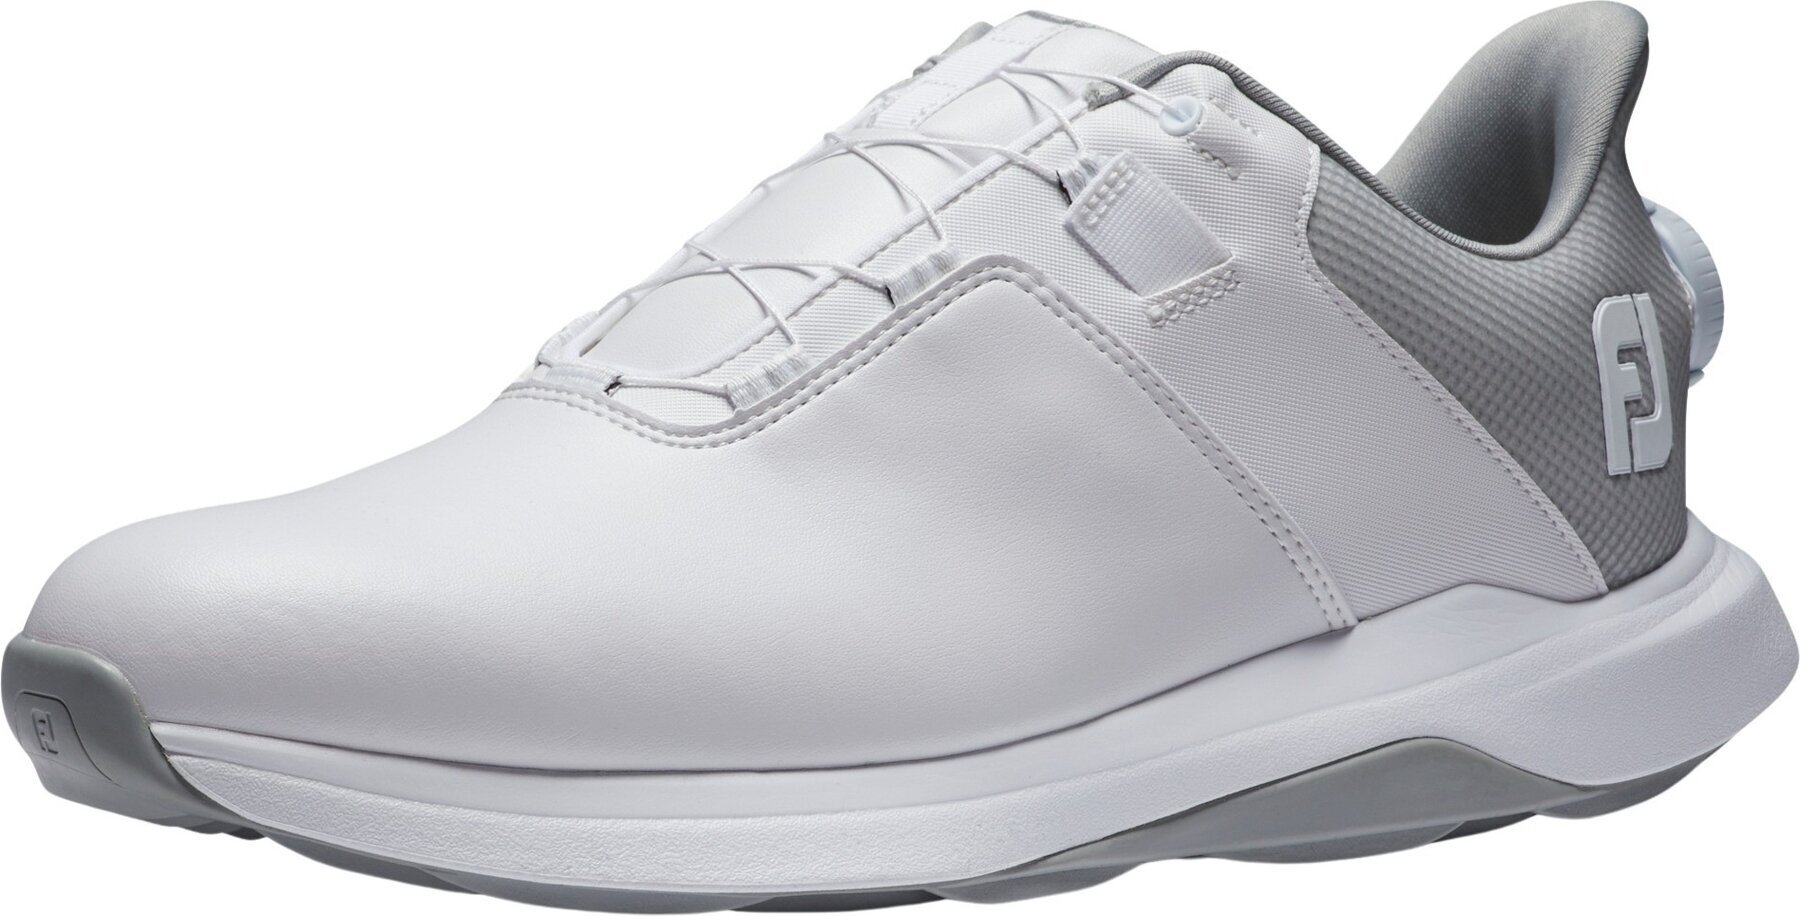 Calçado de golfe para homem Footjoy ProLite Mens Golf Shoes White/White/Grey 43